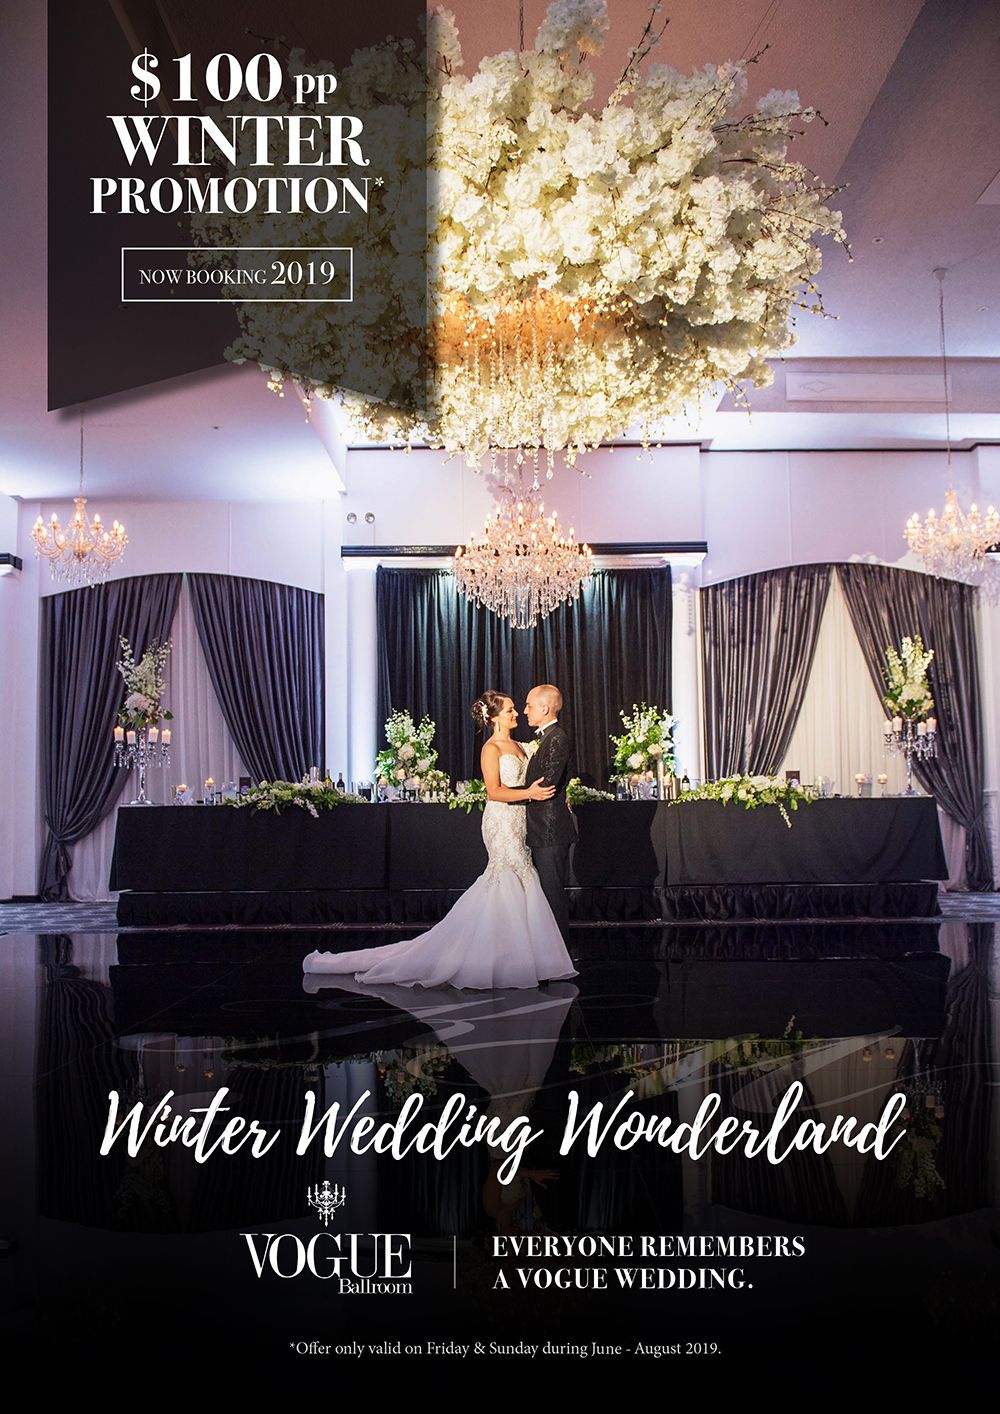 Vogue Ballroom 2018 Exclusive Offer 99pp Winter Wedding Wonderland